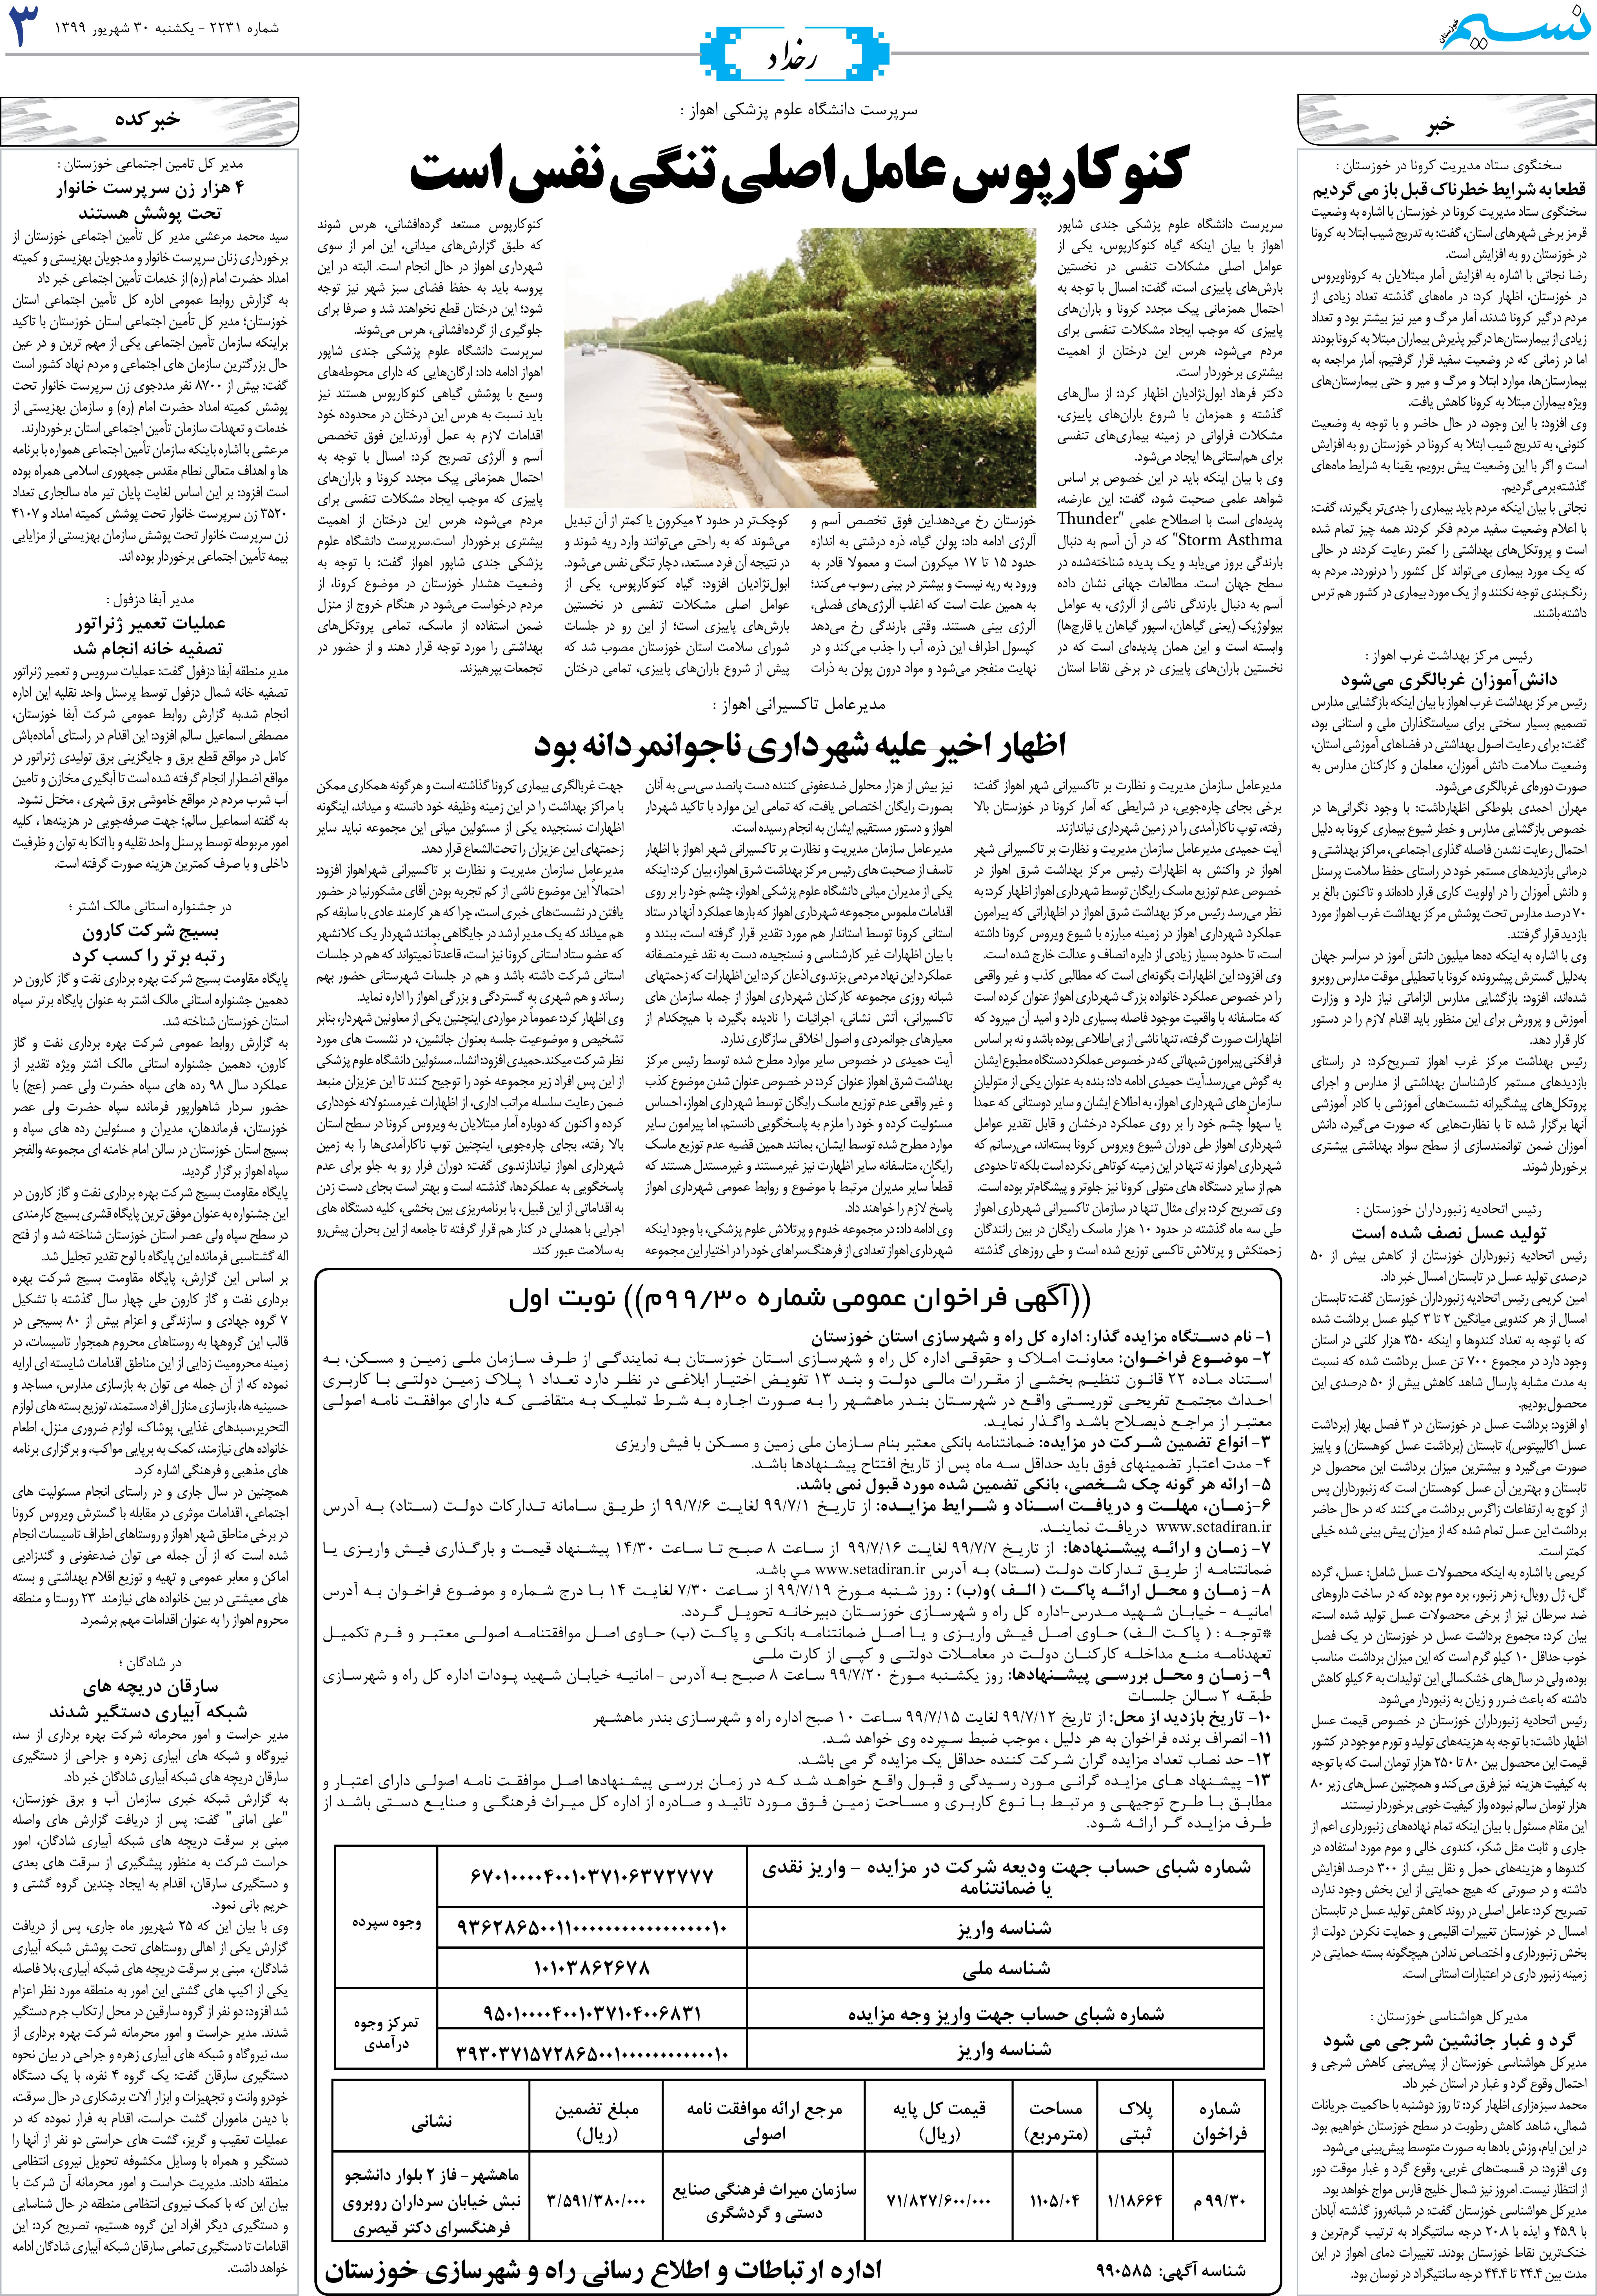 صفحه رخداد روزنامه نسیم شماره 2231